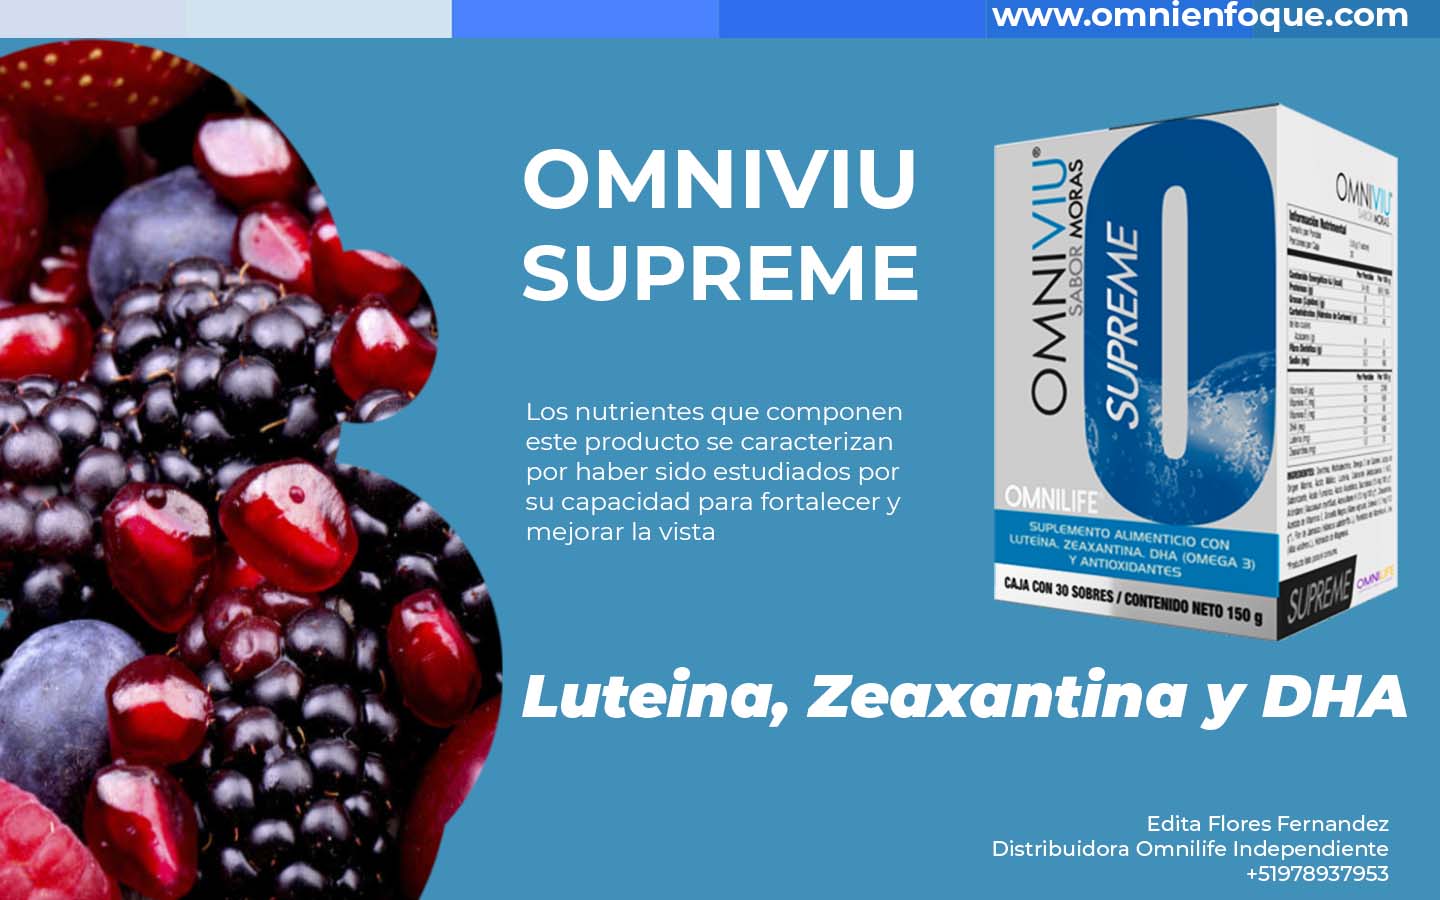 OMniviu Supreme tiene nutrientes importantes para una visión optima